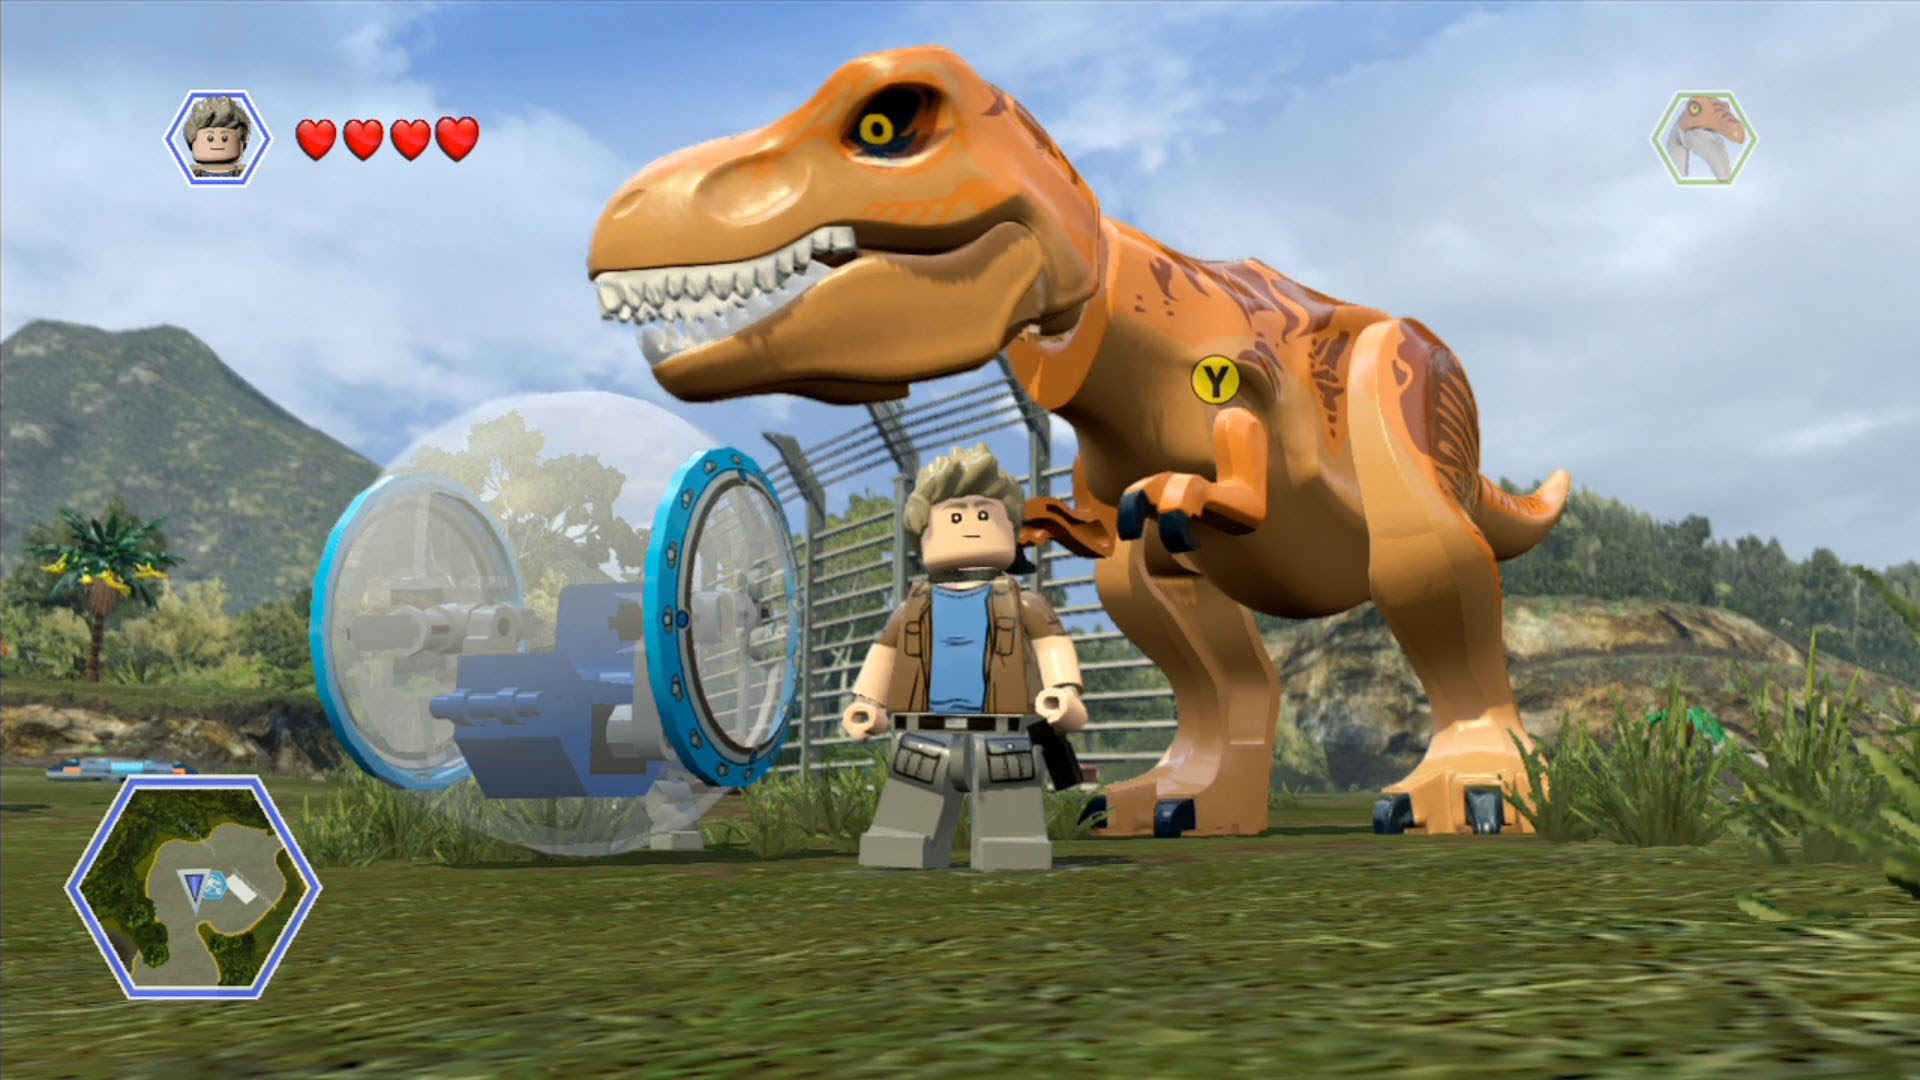 LEGO Jurassic World HD wallpapers, Desktop wallpaper - most viewed